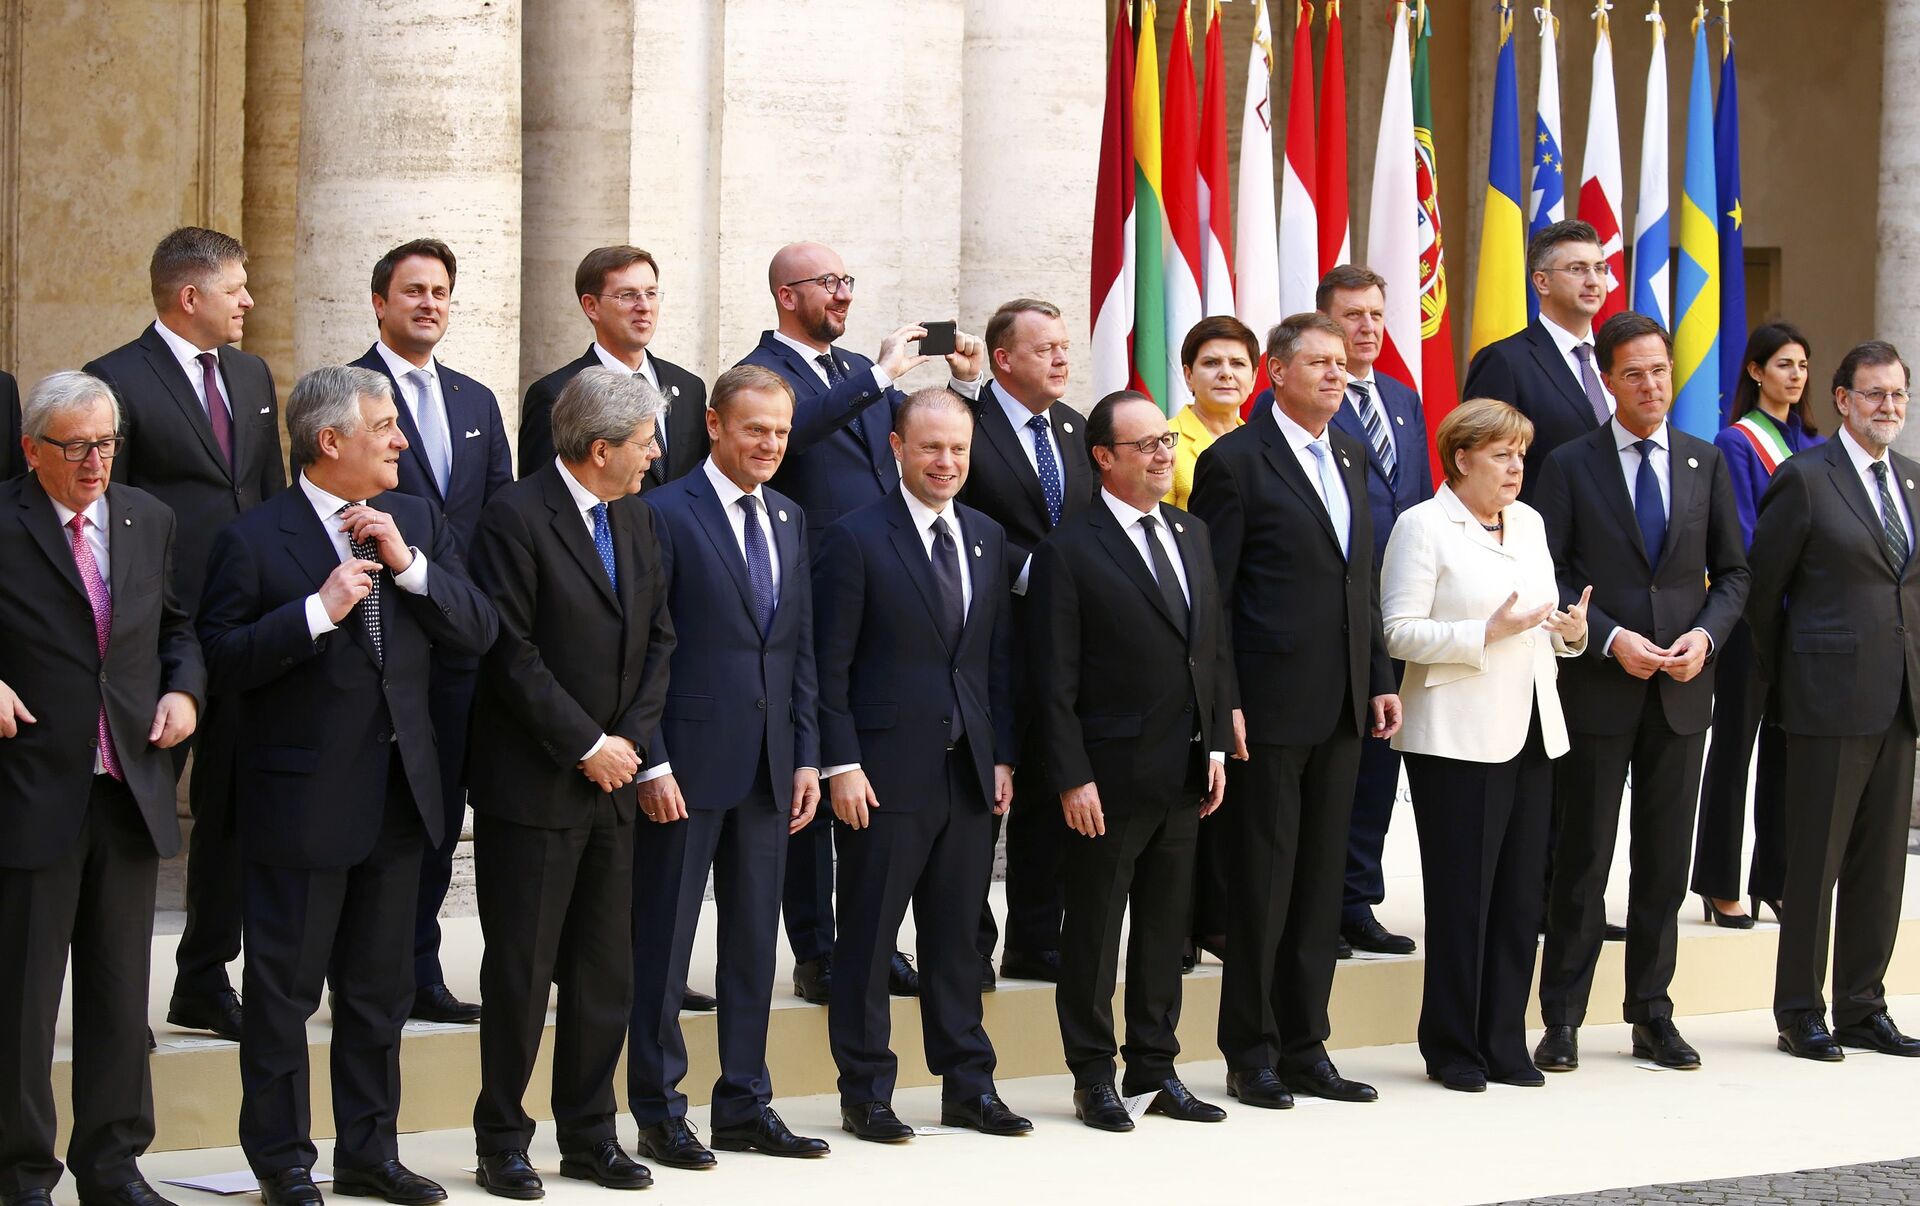 Встреча вся страна. Саммит европейского Союза. Лидеры стран ЕС. Лидеры Евросоюза.